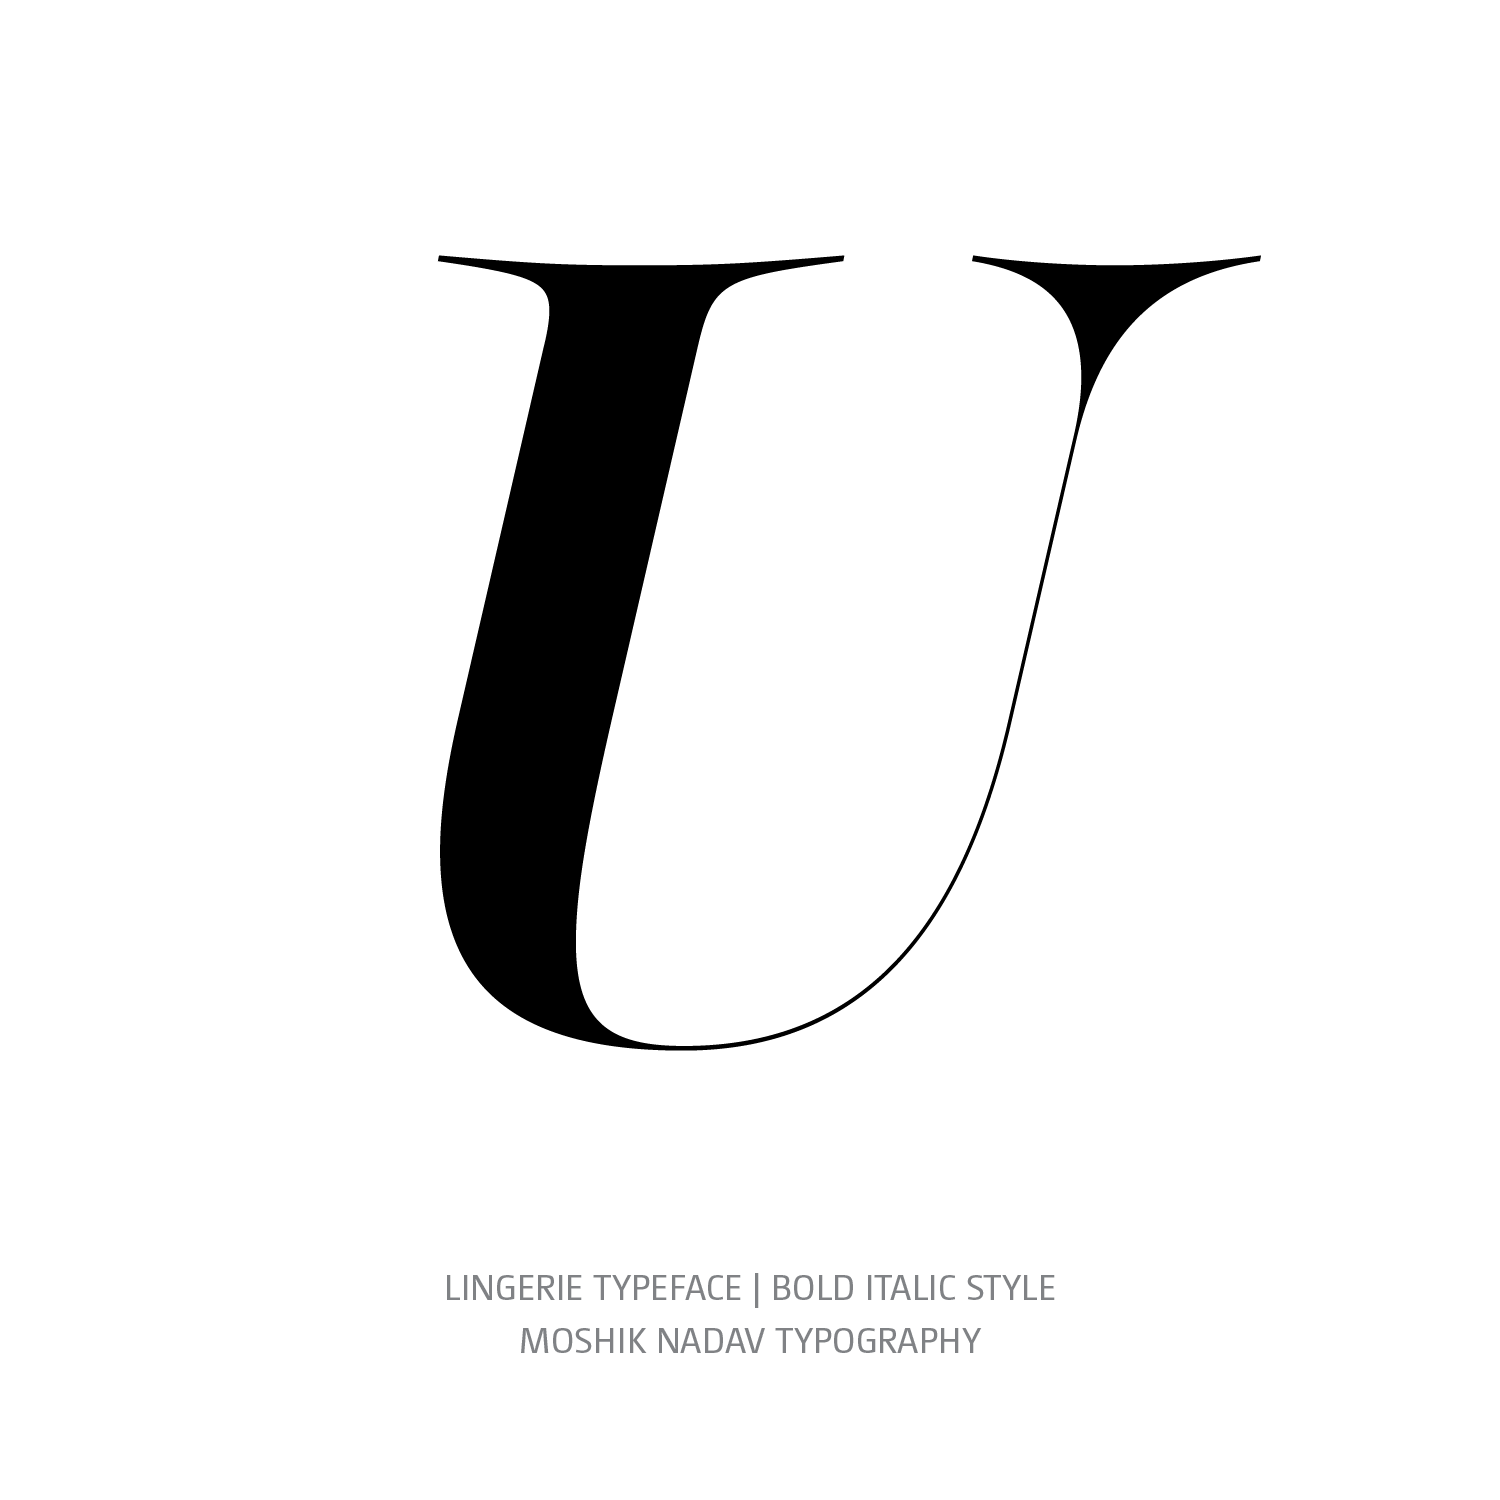 Lingerie Typeface Bold Italic U